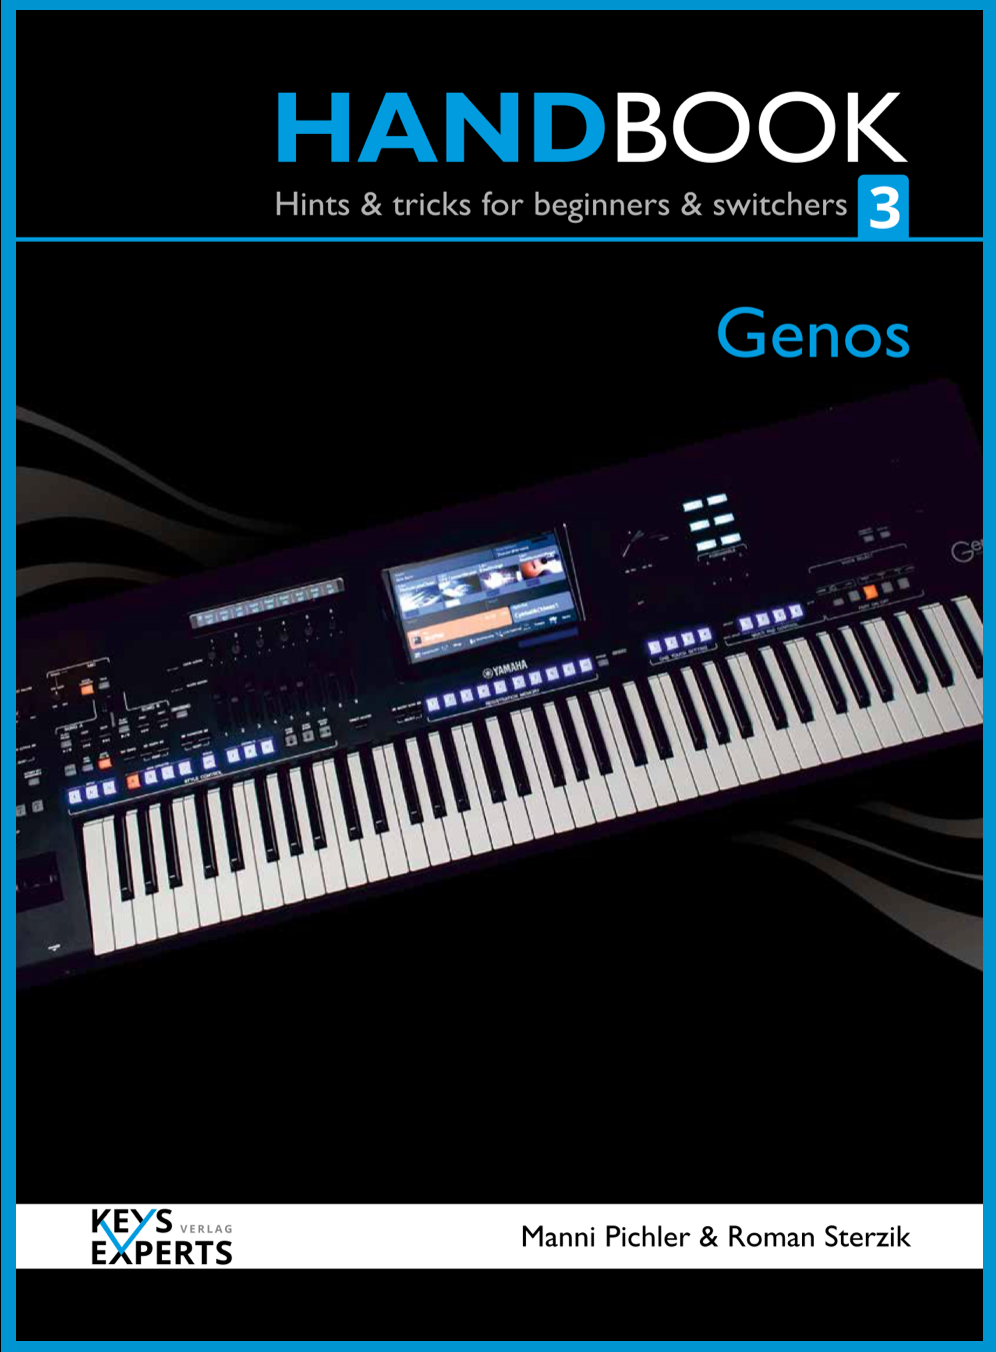 GENOS Handbook3